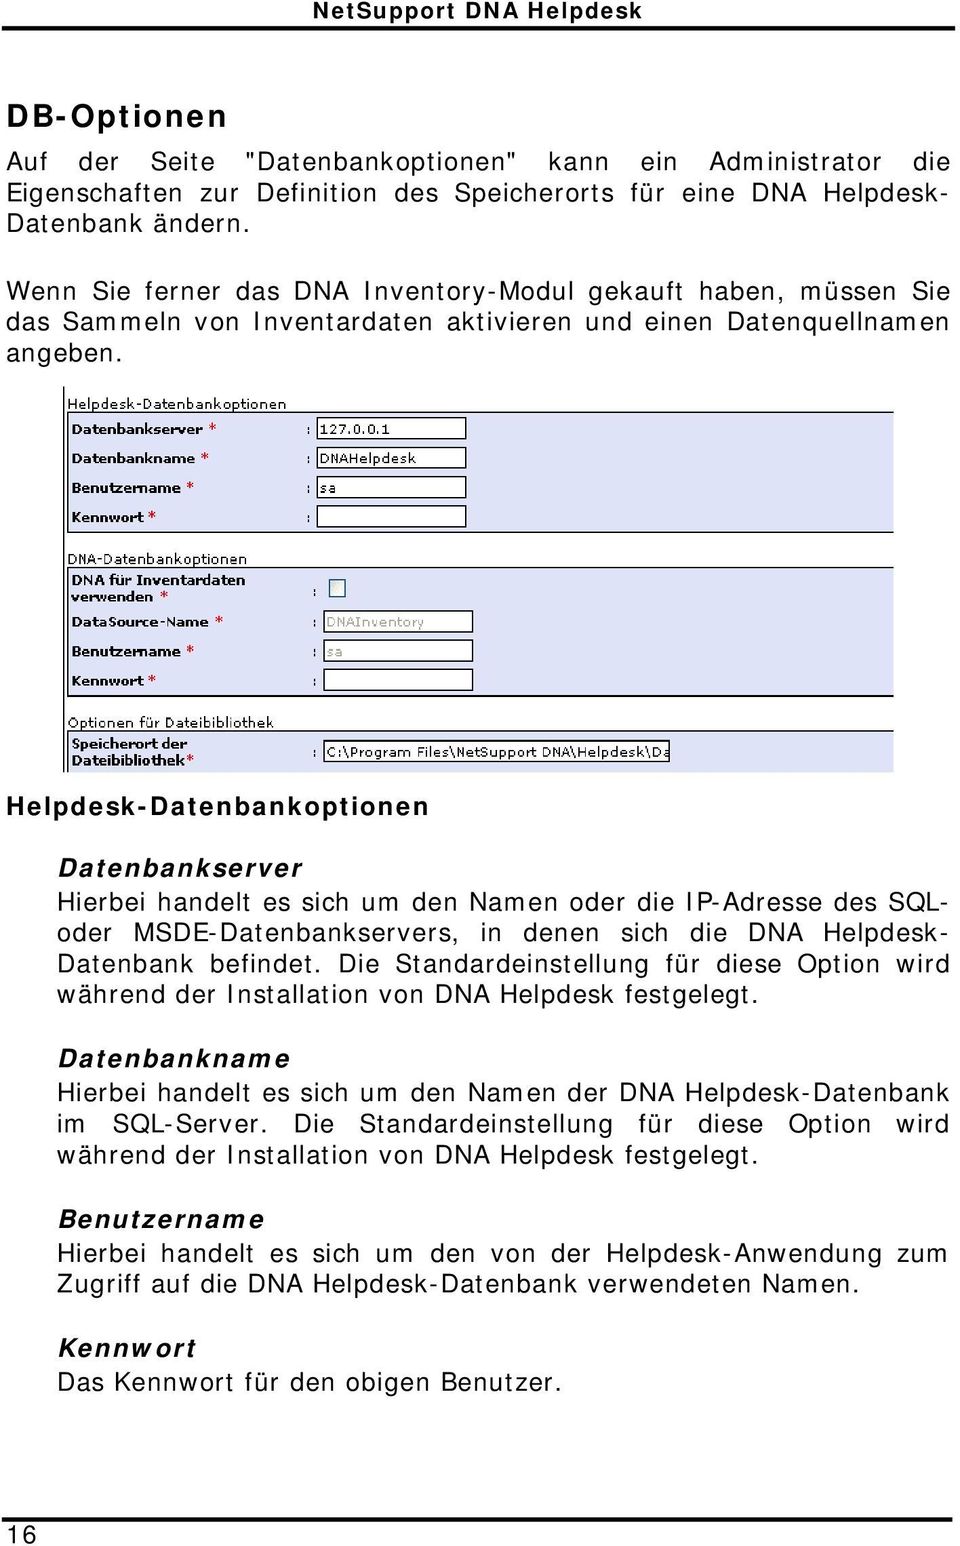 Helpdesk-Datenbankoptionen Datenbankserver Hierbei handelt es sich um den Namen oder die IP-Adresse des SQLoder MSDE-Datenbankservers, in denen sich die DNA Helpdesk- Datenbank befindet.